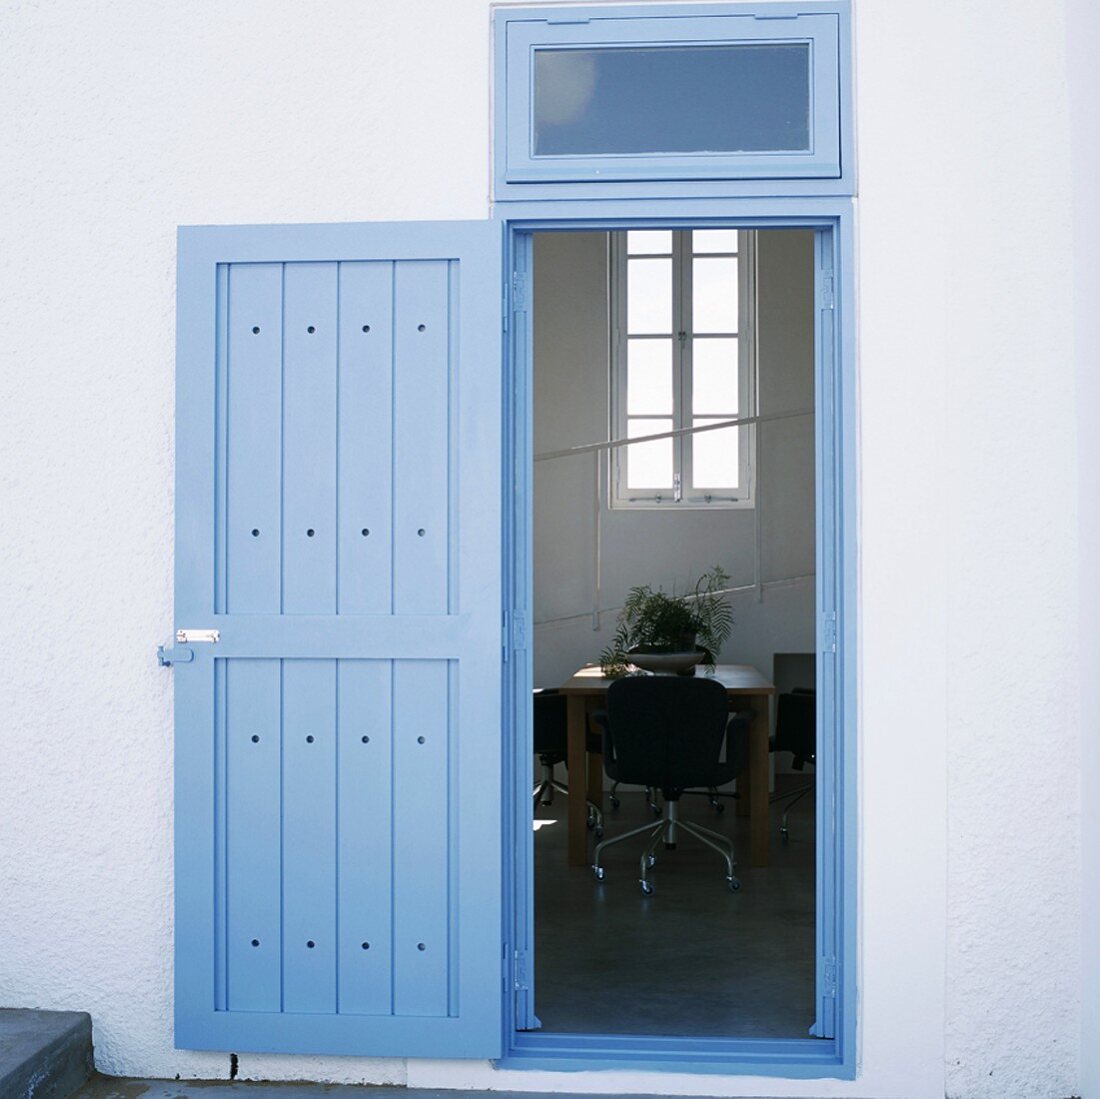 Open front door with view into interior